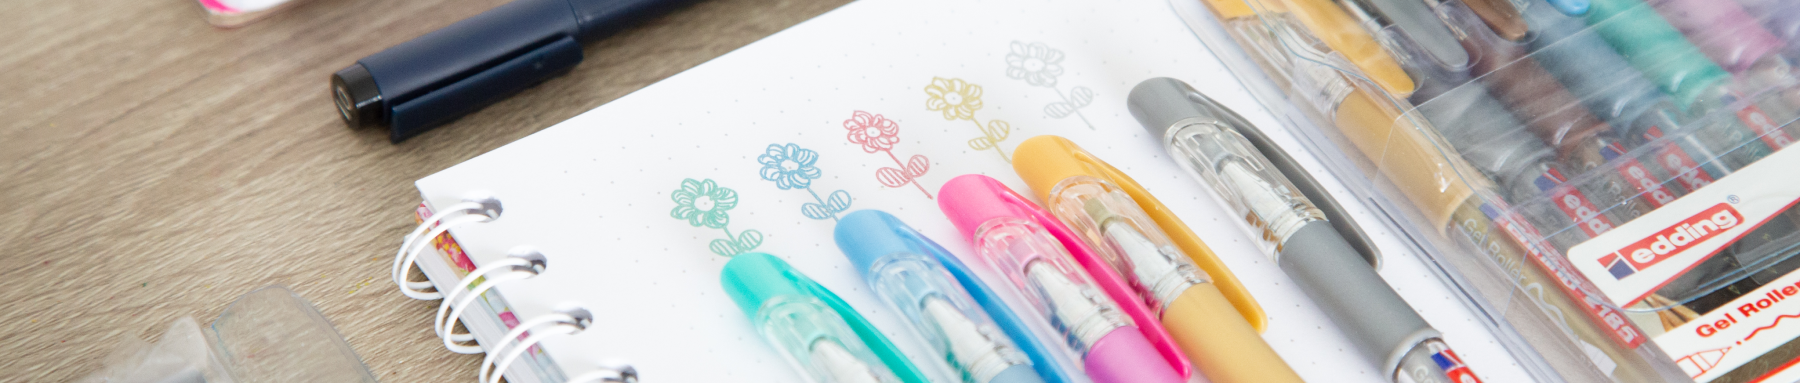 Eine Reihe bunter Stifte liegt neben einem Notizbuch mit gekritzelten Blumen und signalisiert einen Moment der Kreativität oder Planung.